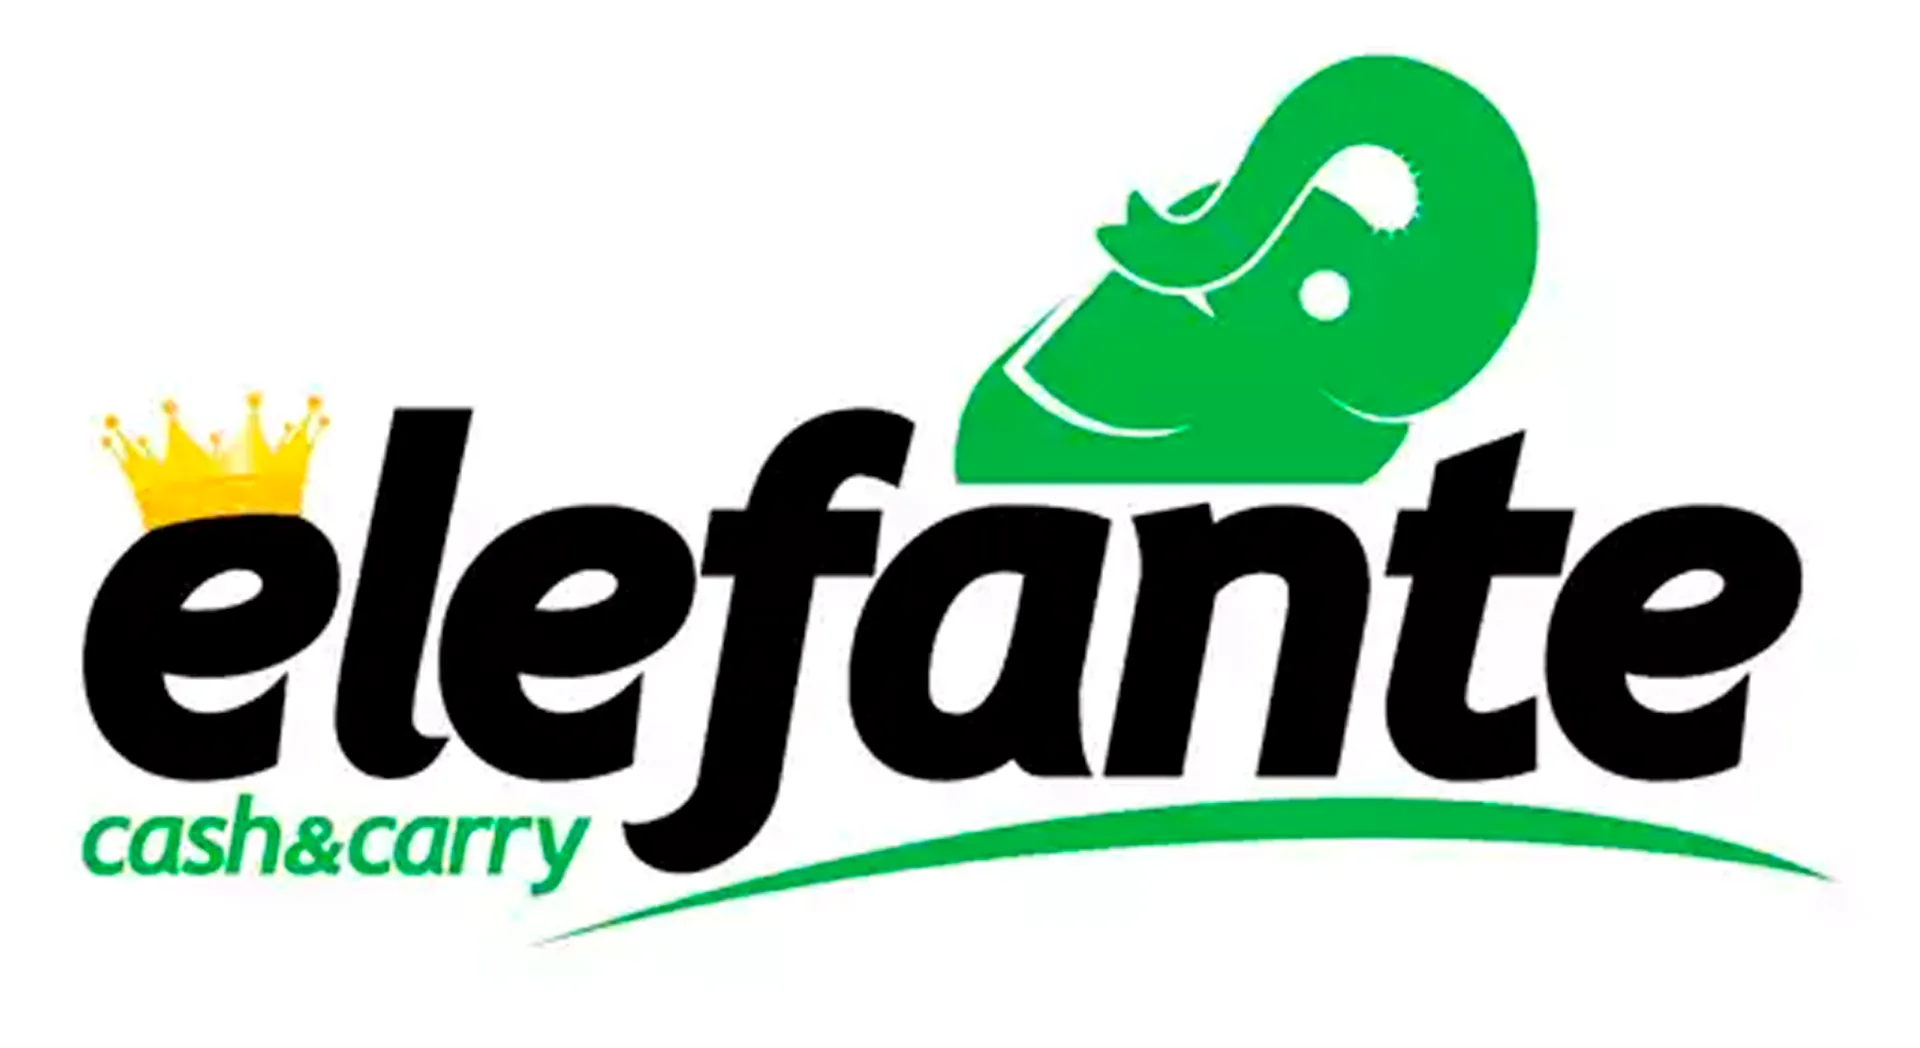 ELEFANTE CASH & CARRY logo